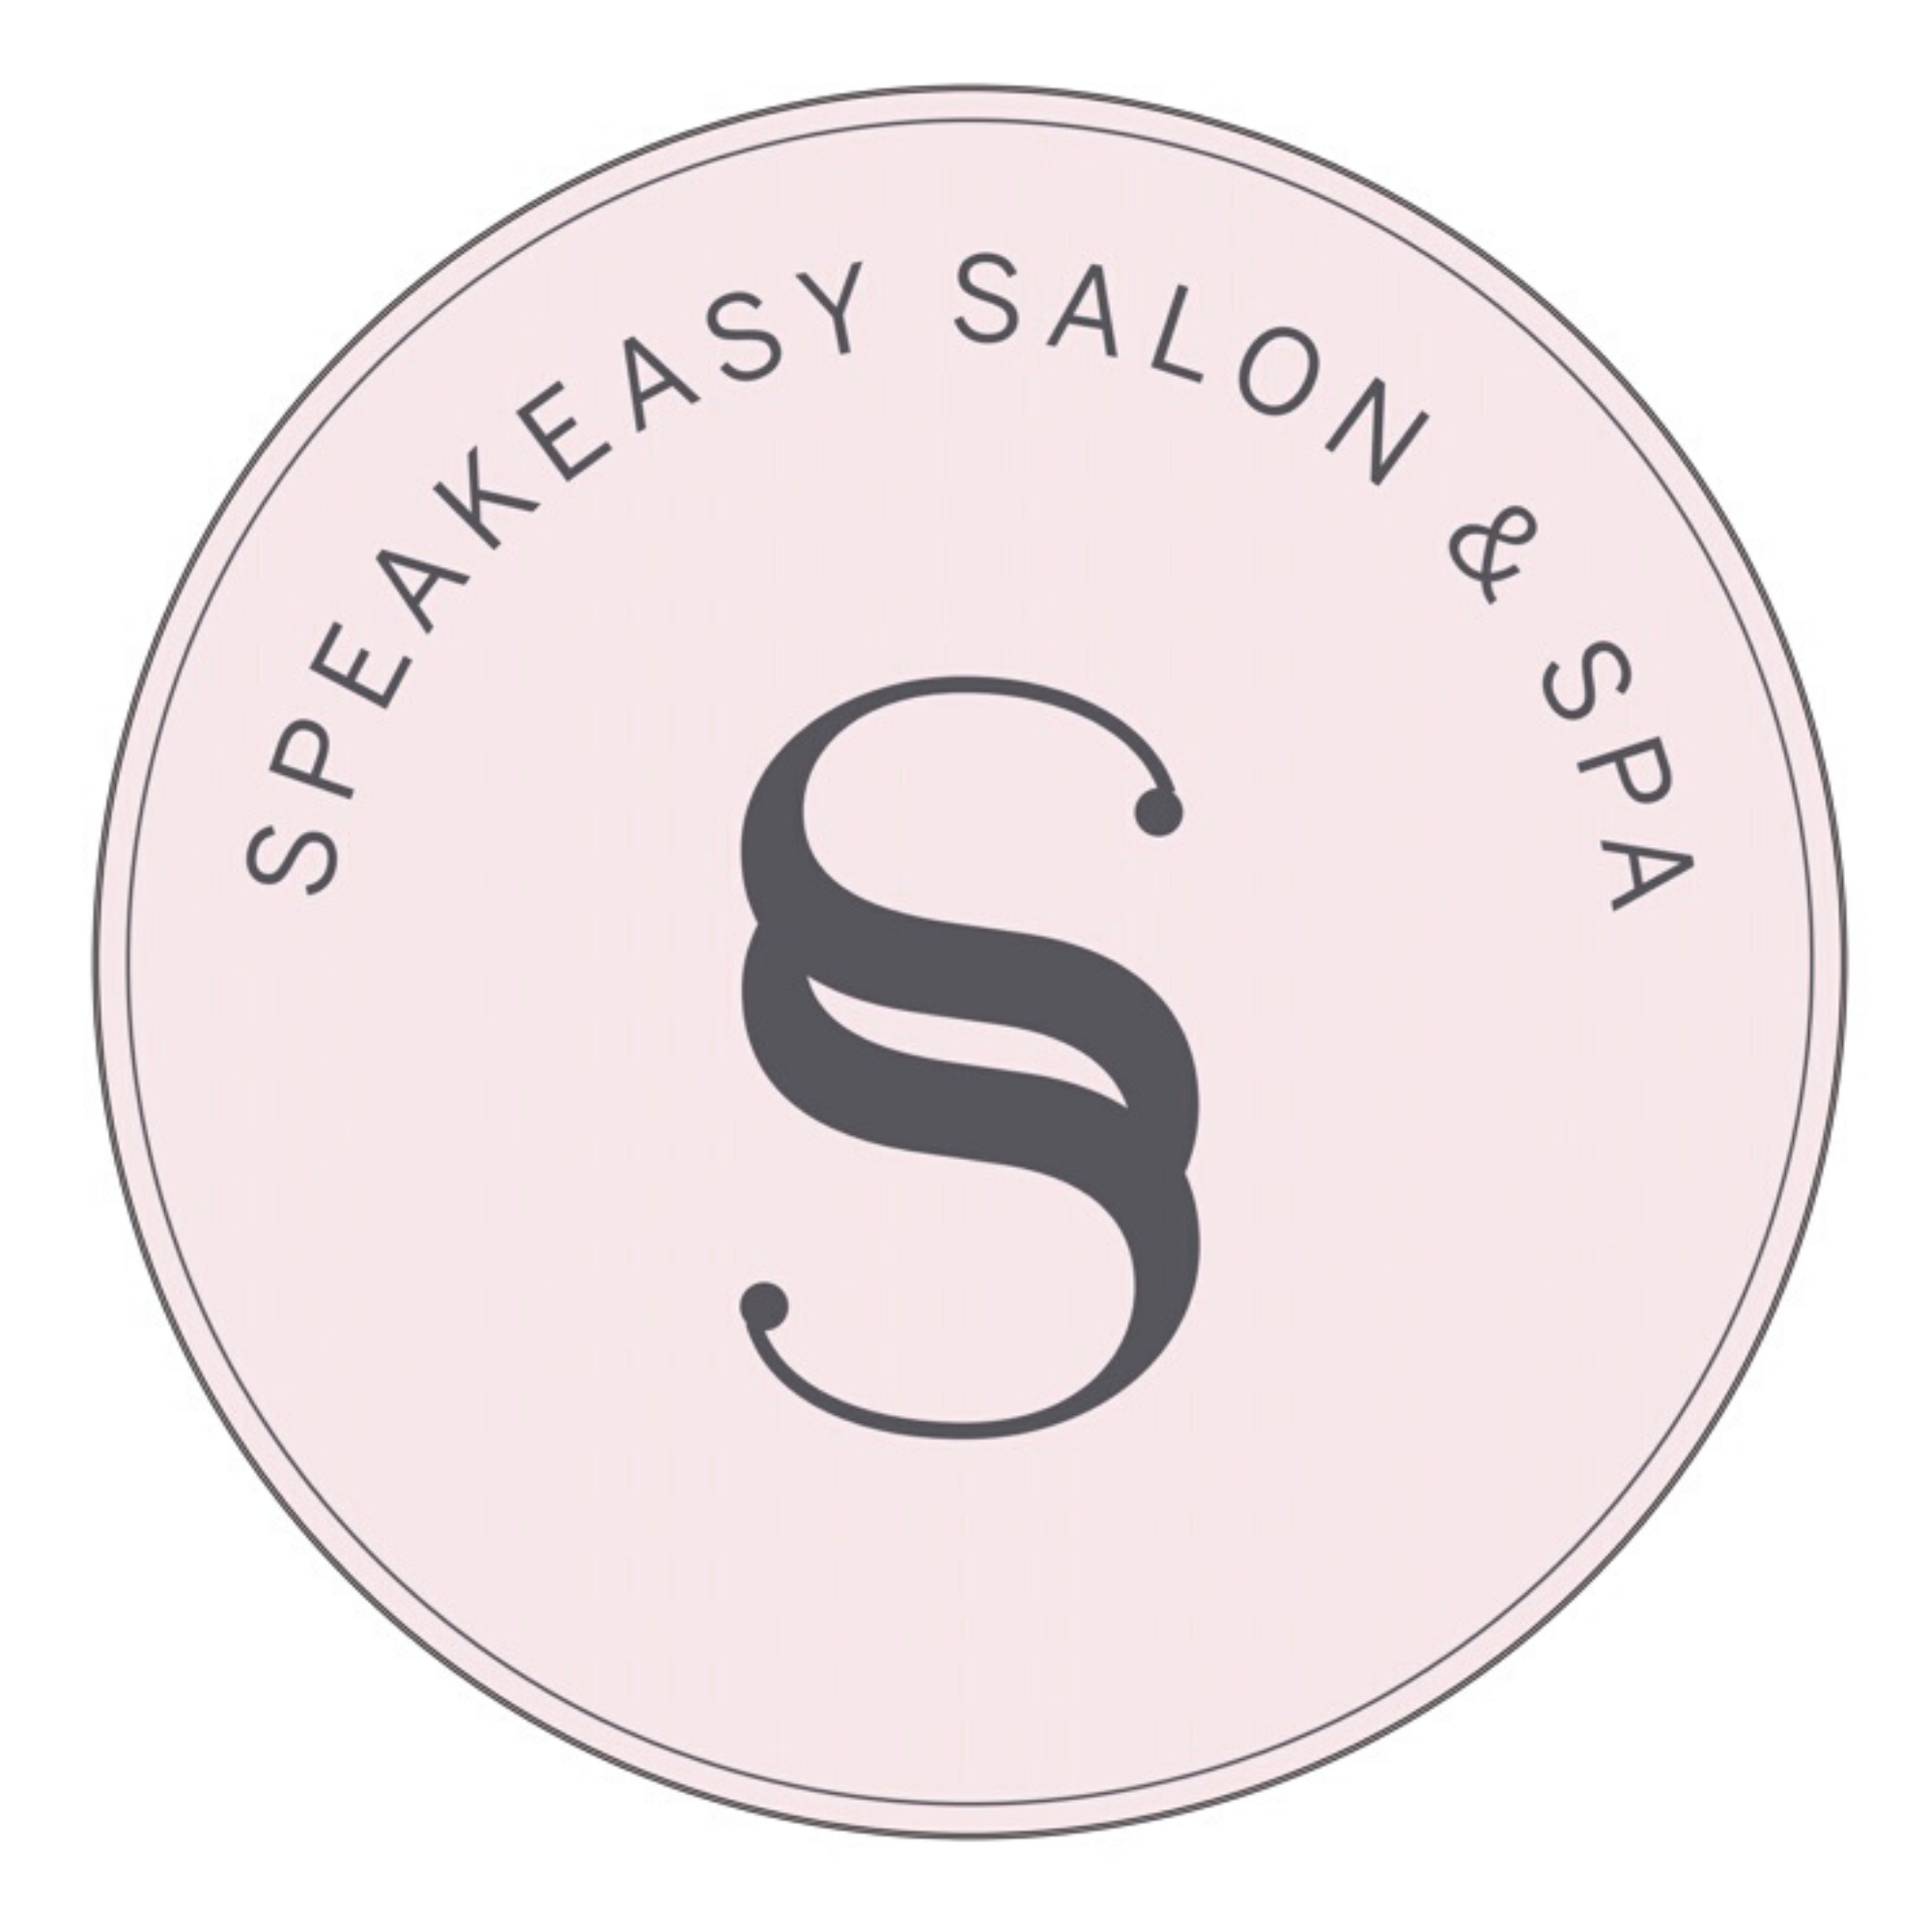 Speakeasy Salon